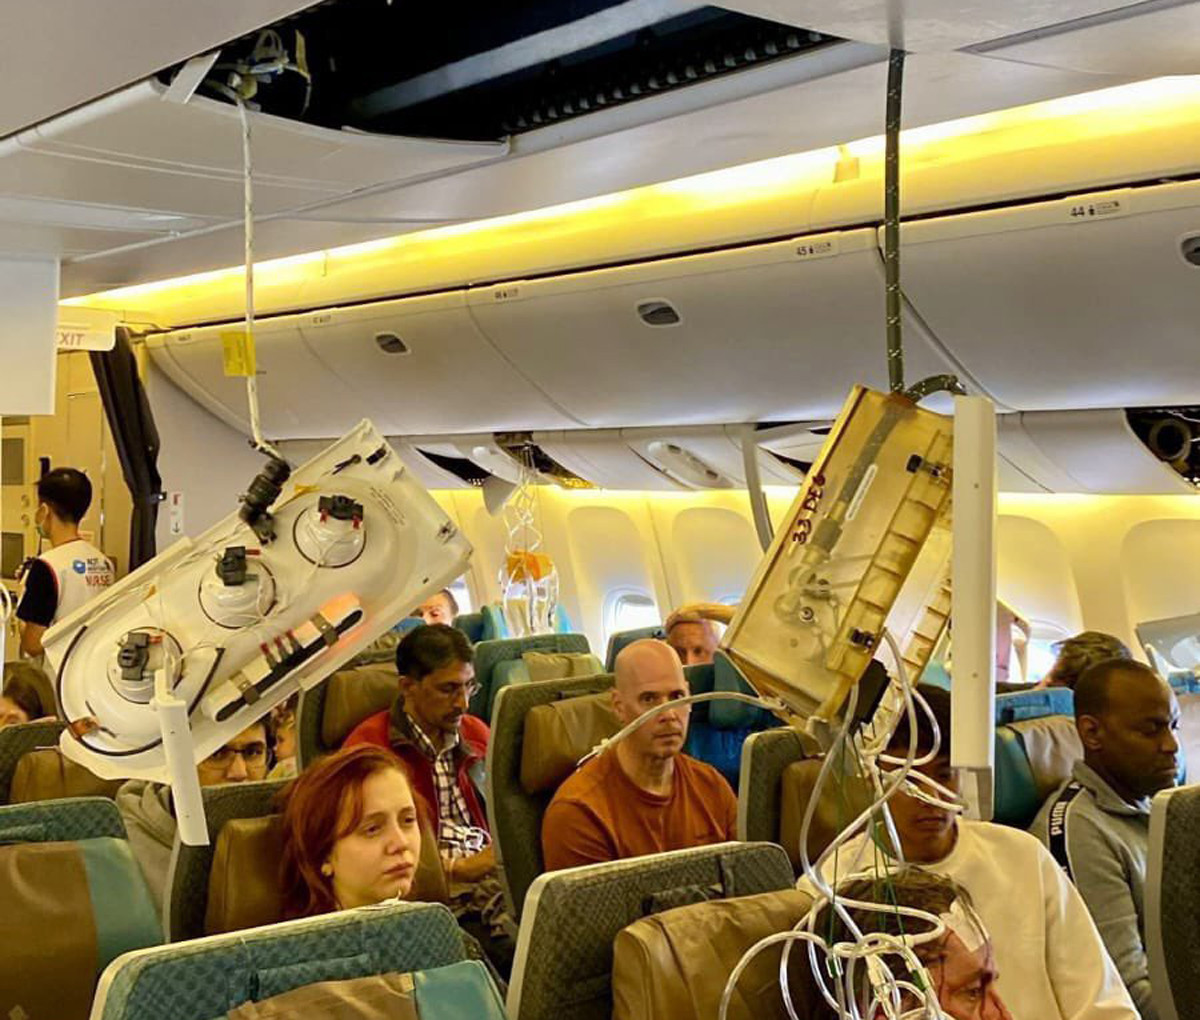 Qué ha pasado en el vuelo de Singapore Airlines: un herido y varios heridos